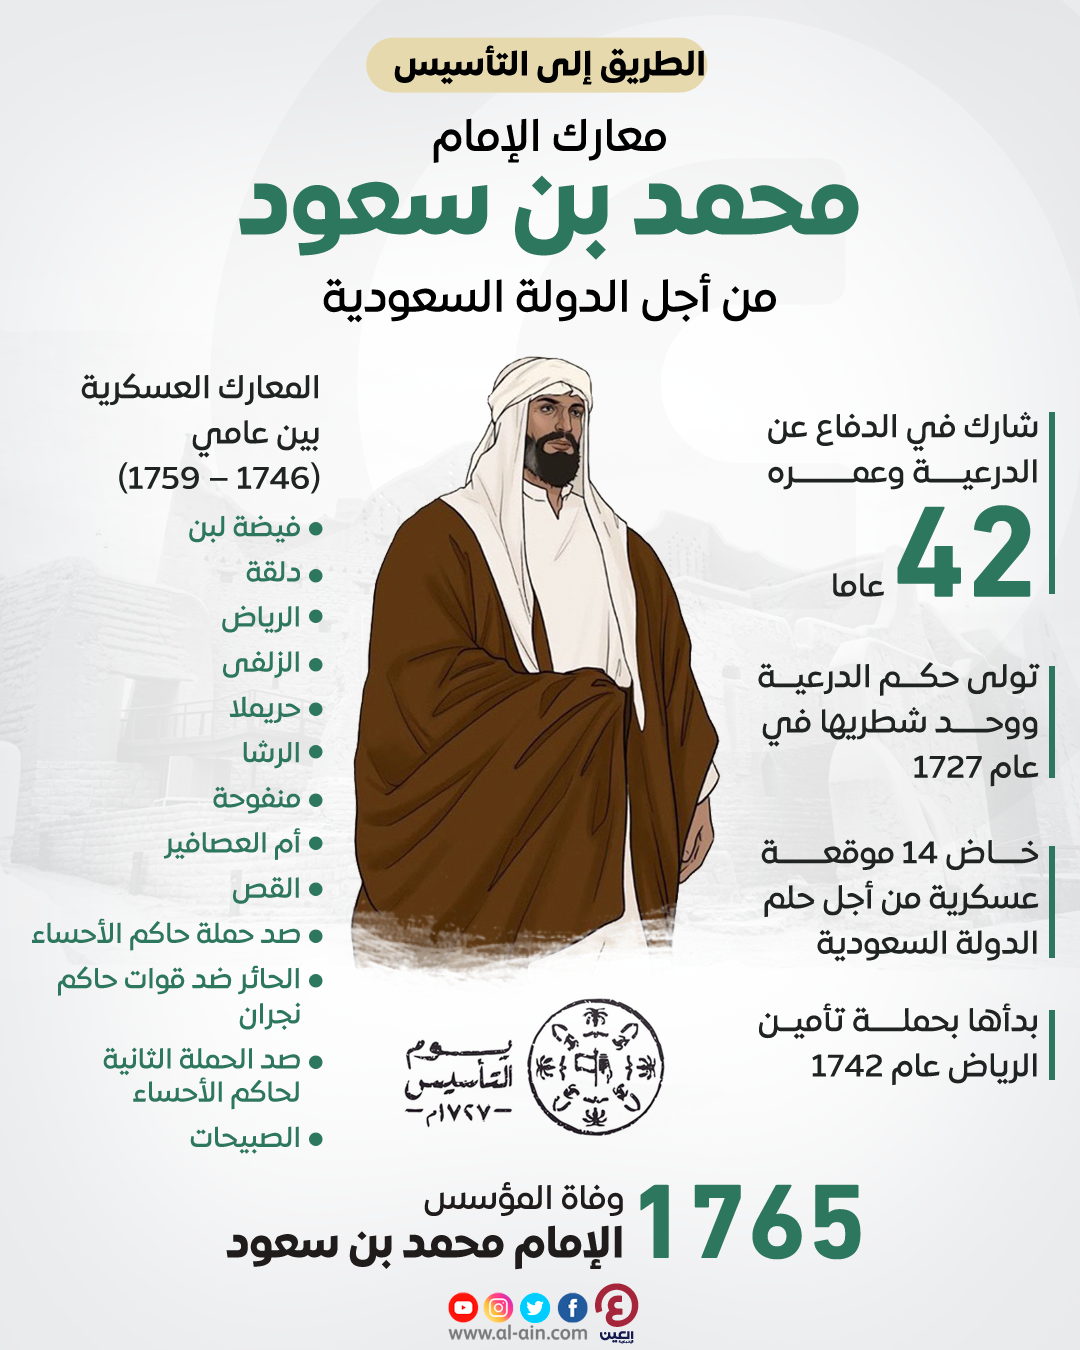 تمكن الإمام محمد بن سعود من تأسيس الدولة السعودية الأولى عام